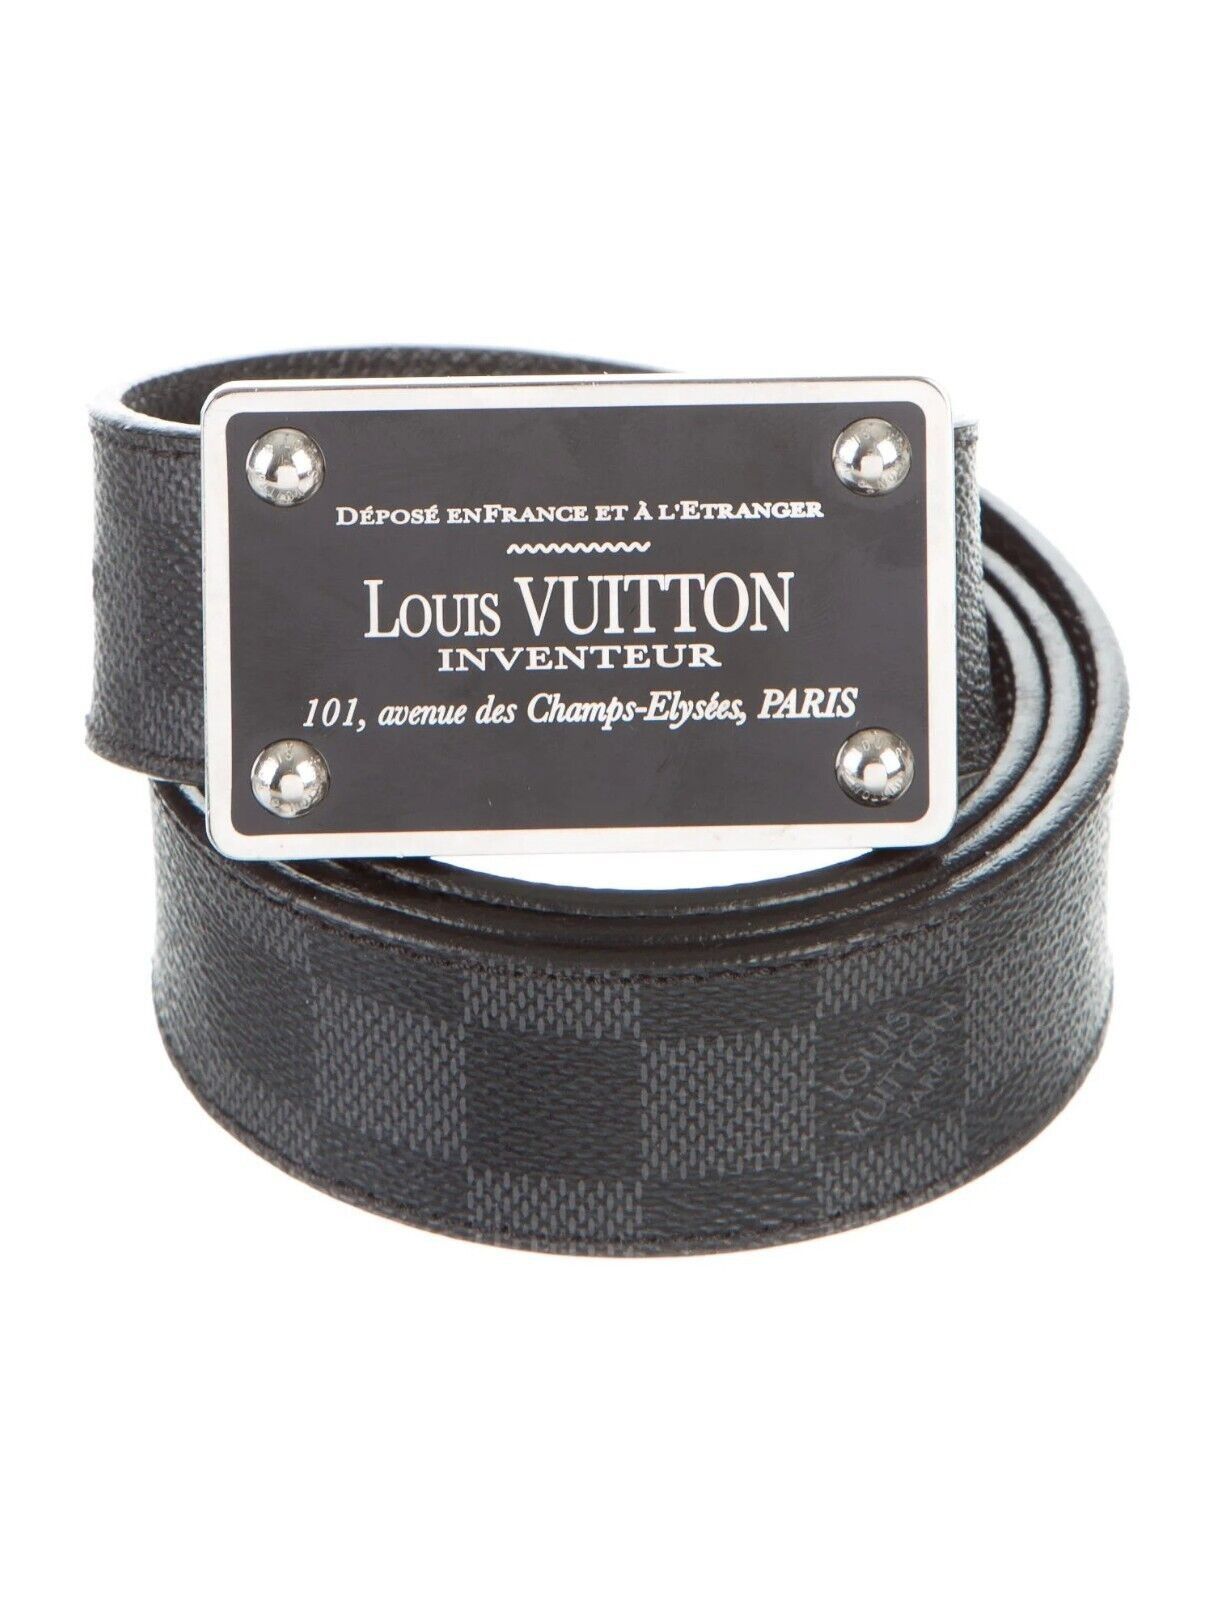 Louis Vuitton, belt 85/34. - Bukowskis